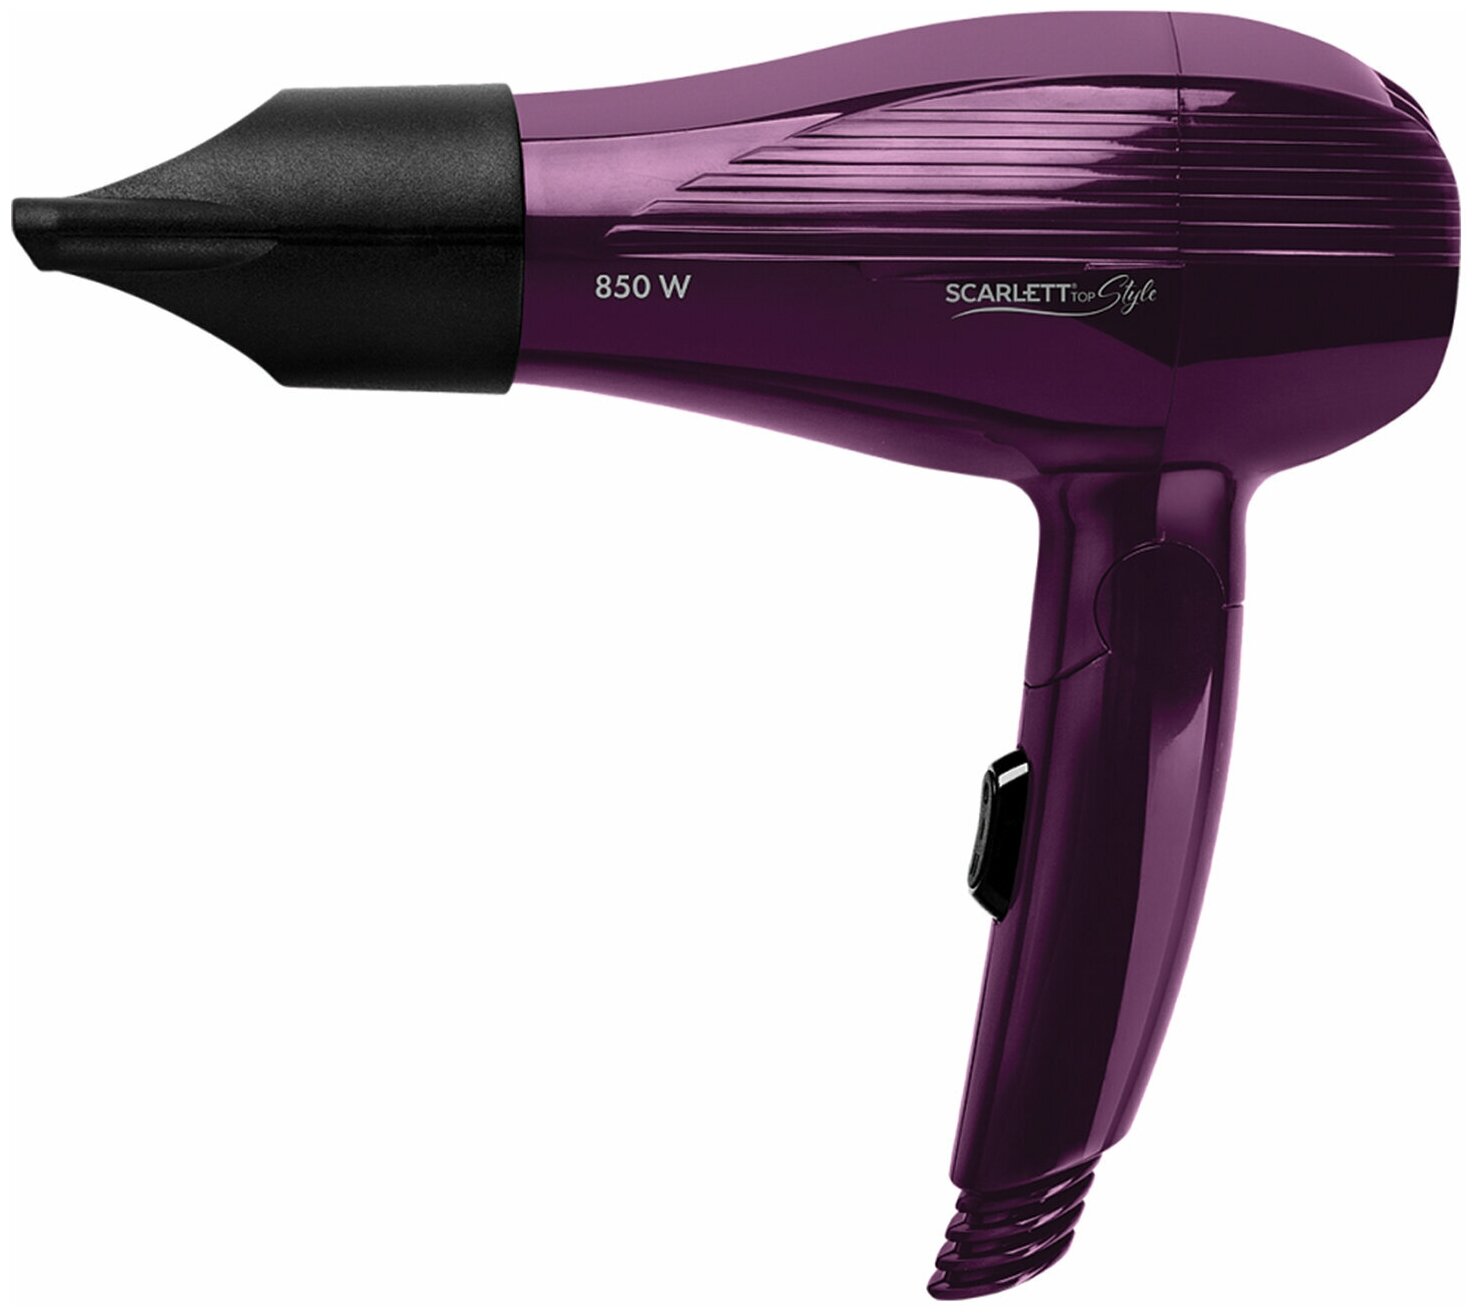 Фен для волос Scarlett мощность 850 вт, 2 скорости, 1 режим, складная ручка, фиолетовый (SC-HD70T24)